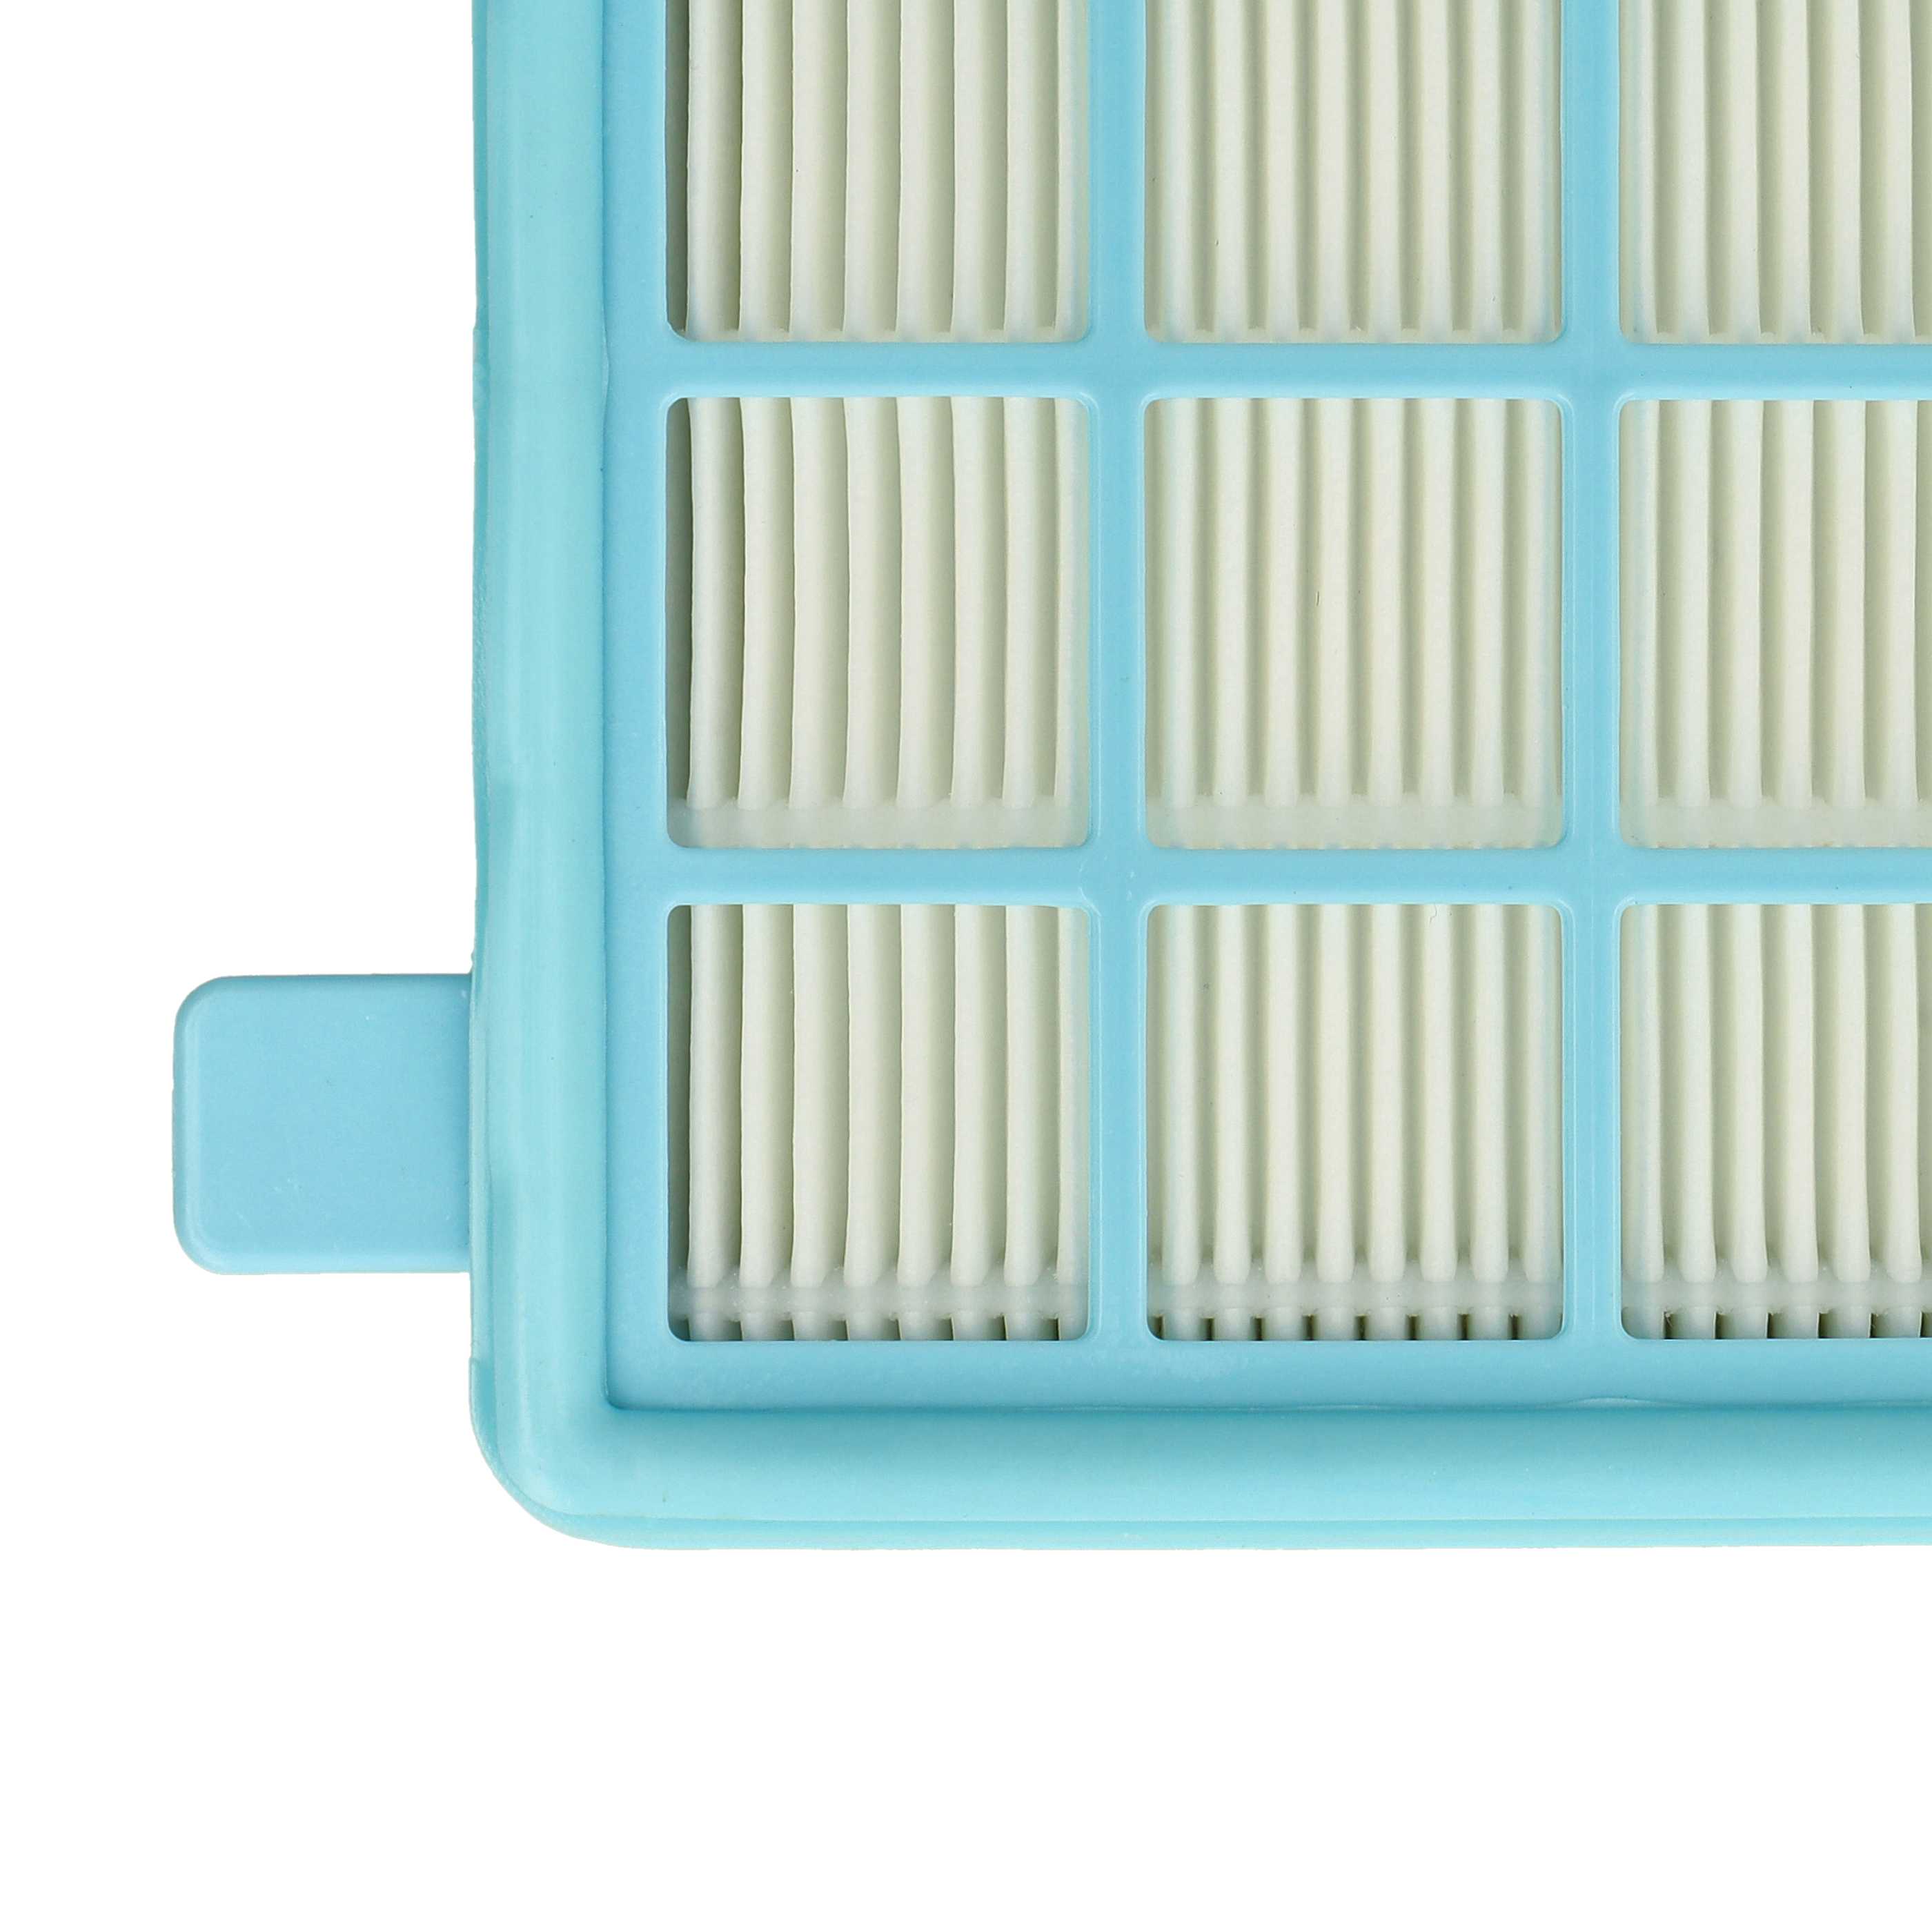 Filtro sostituisce Grundig 9178005623 per aspirapolvere - filtro HEPA, bianco / azzurro